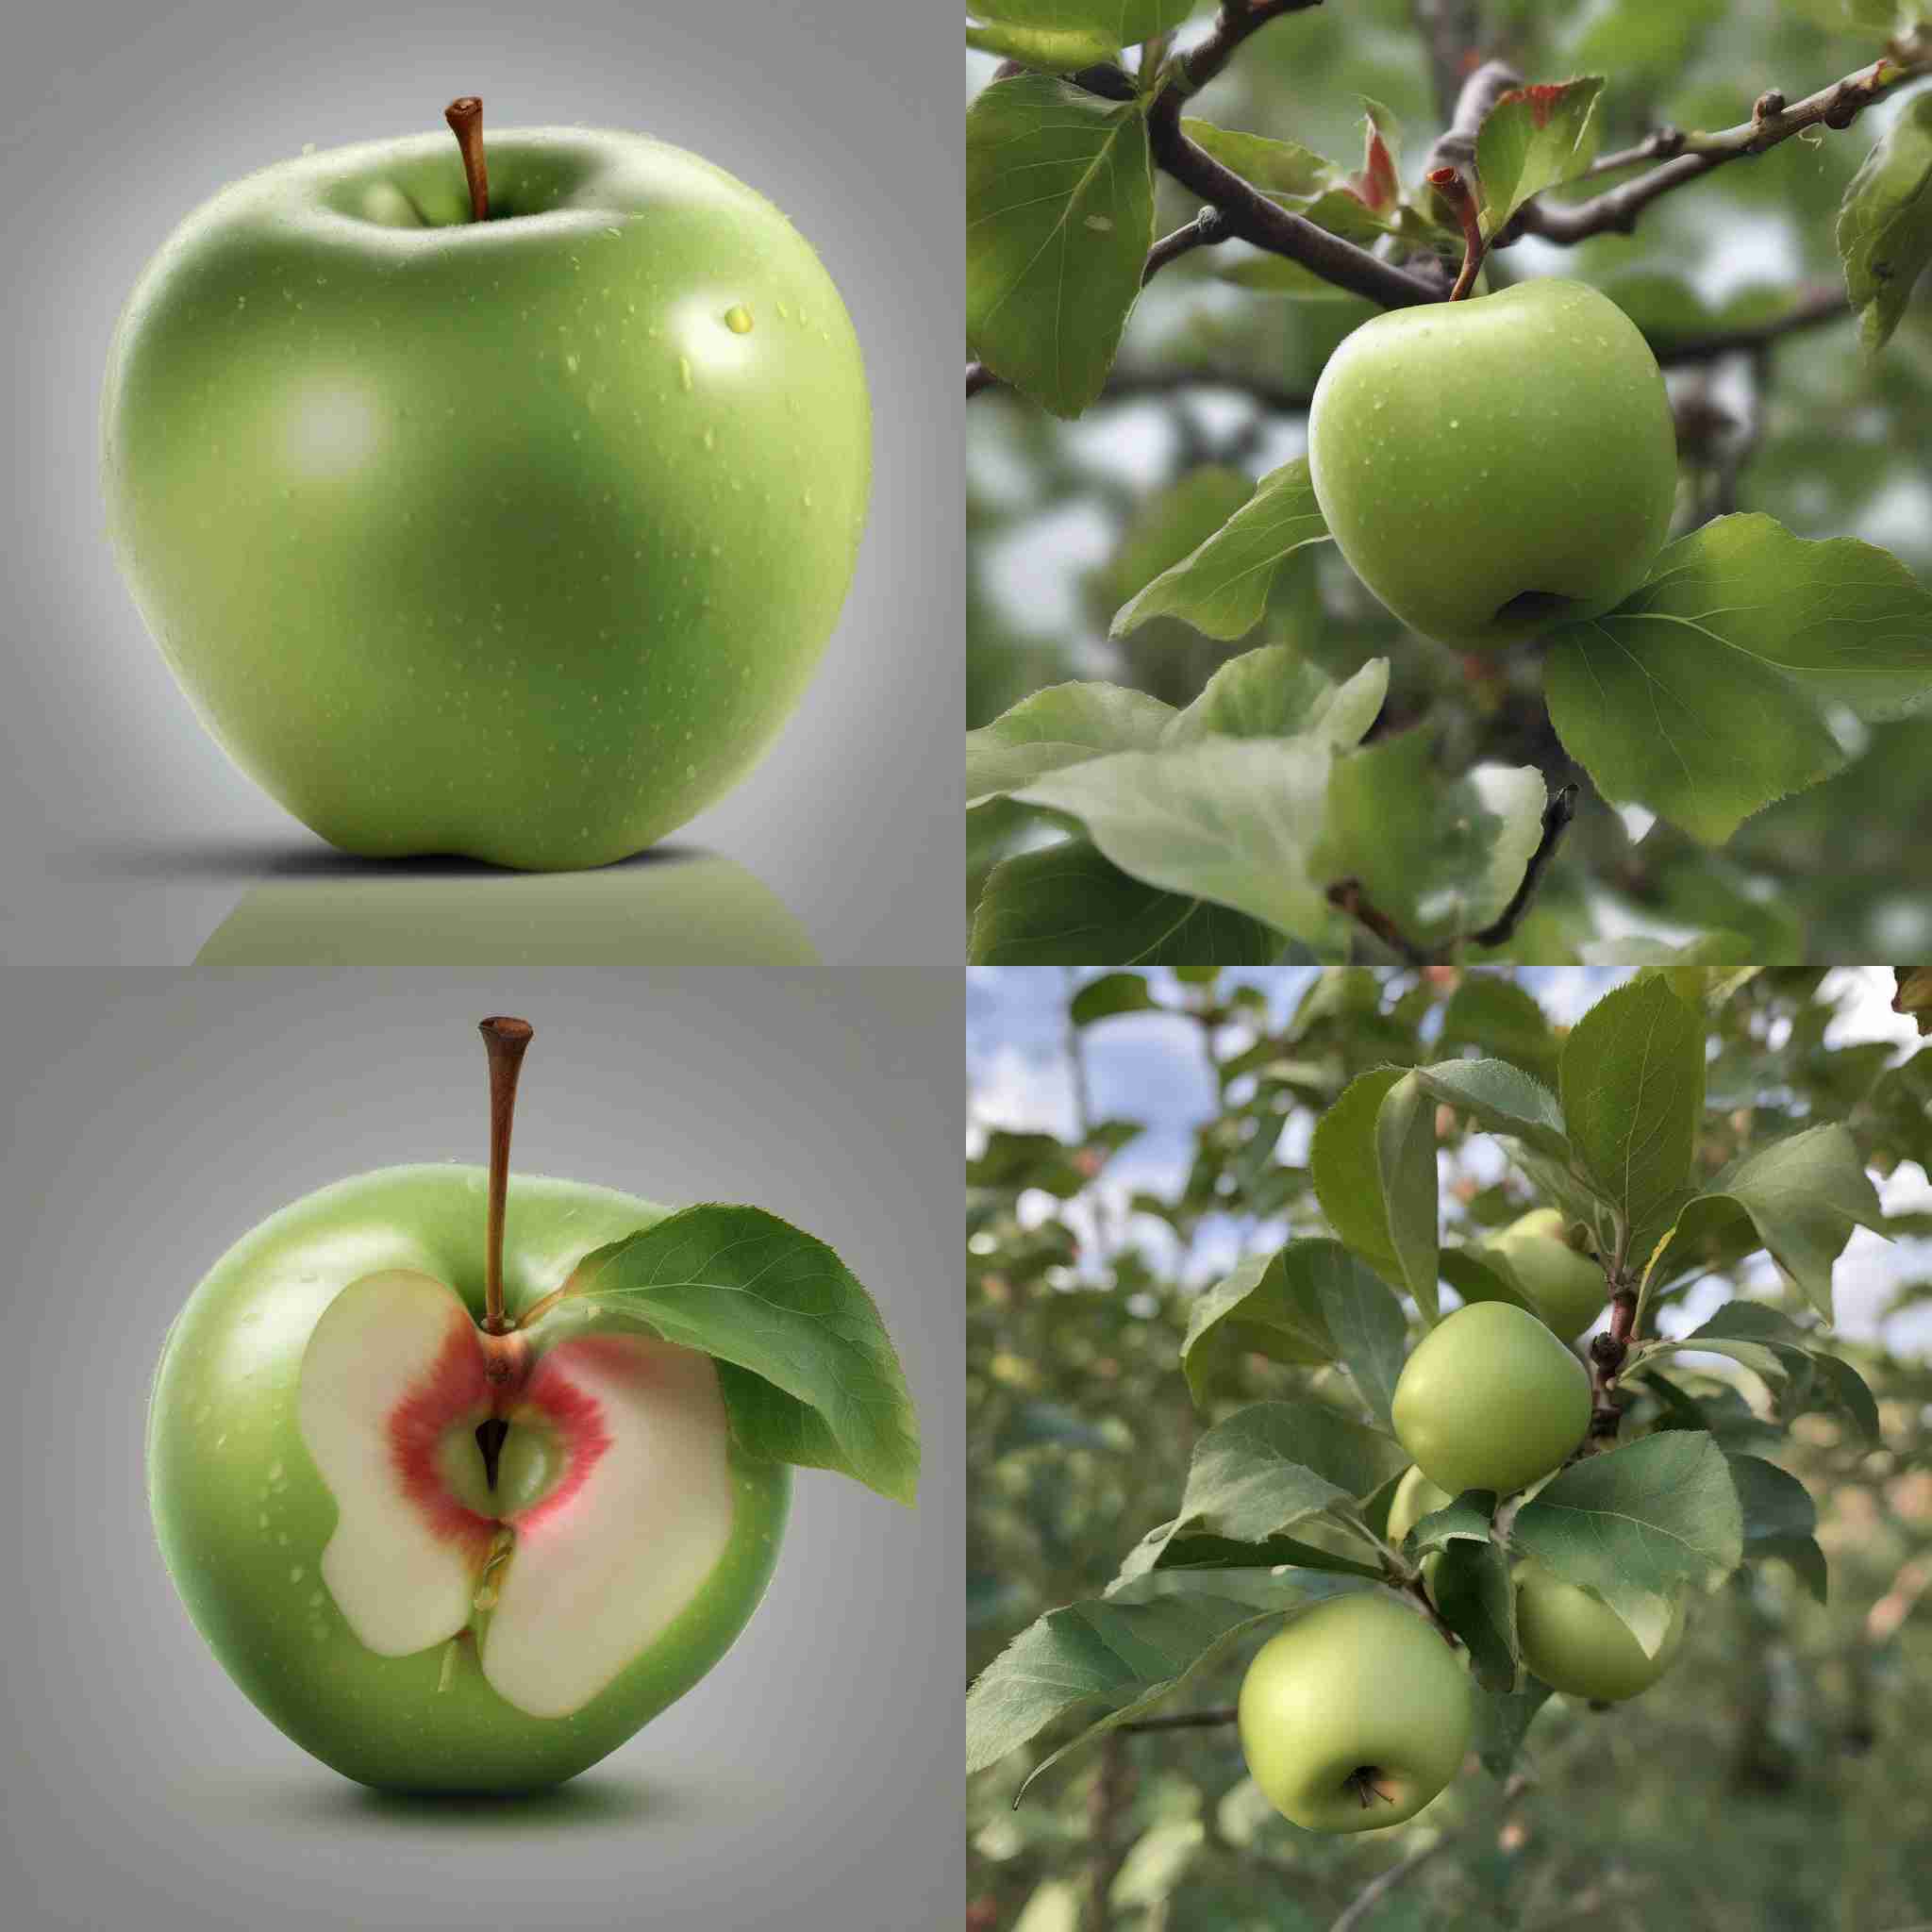 An unripe apple